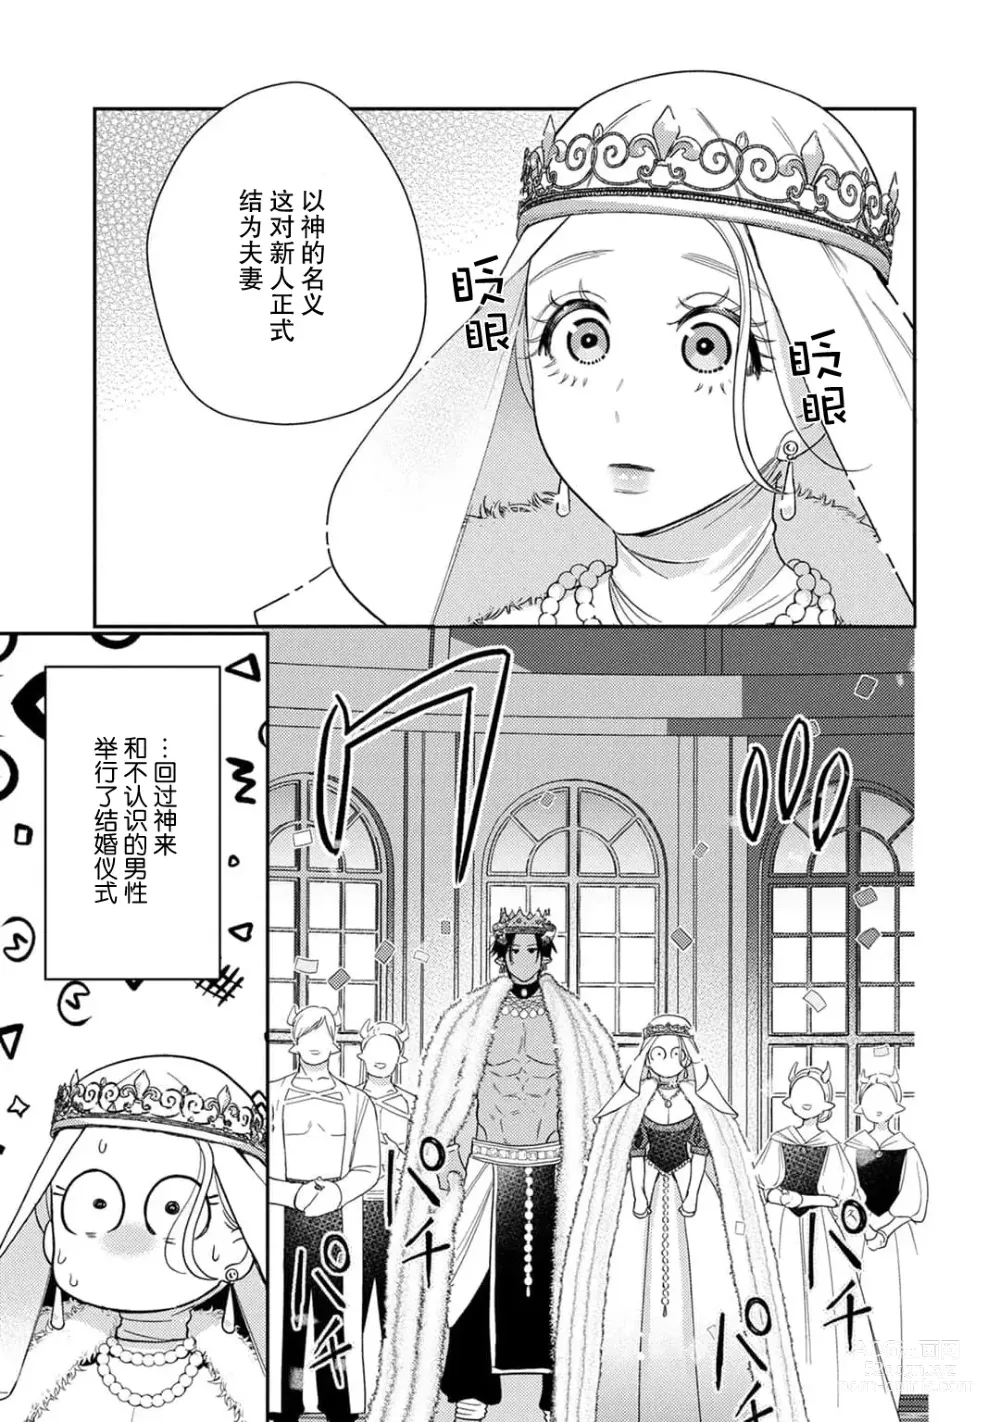 Page 5 of manga 转生成为恶役大小姐，迎接不H就会死的命运~与敌国国王的笼络联姻~ 1-5